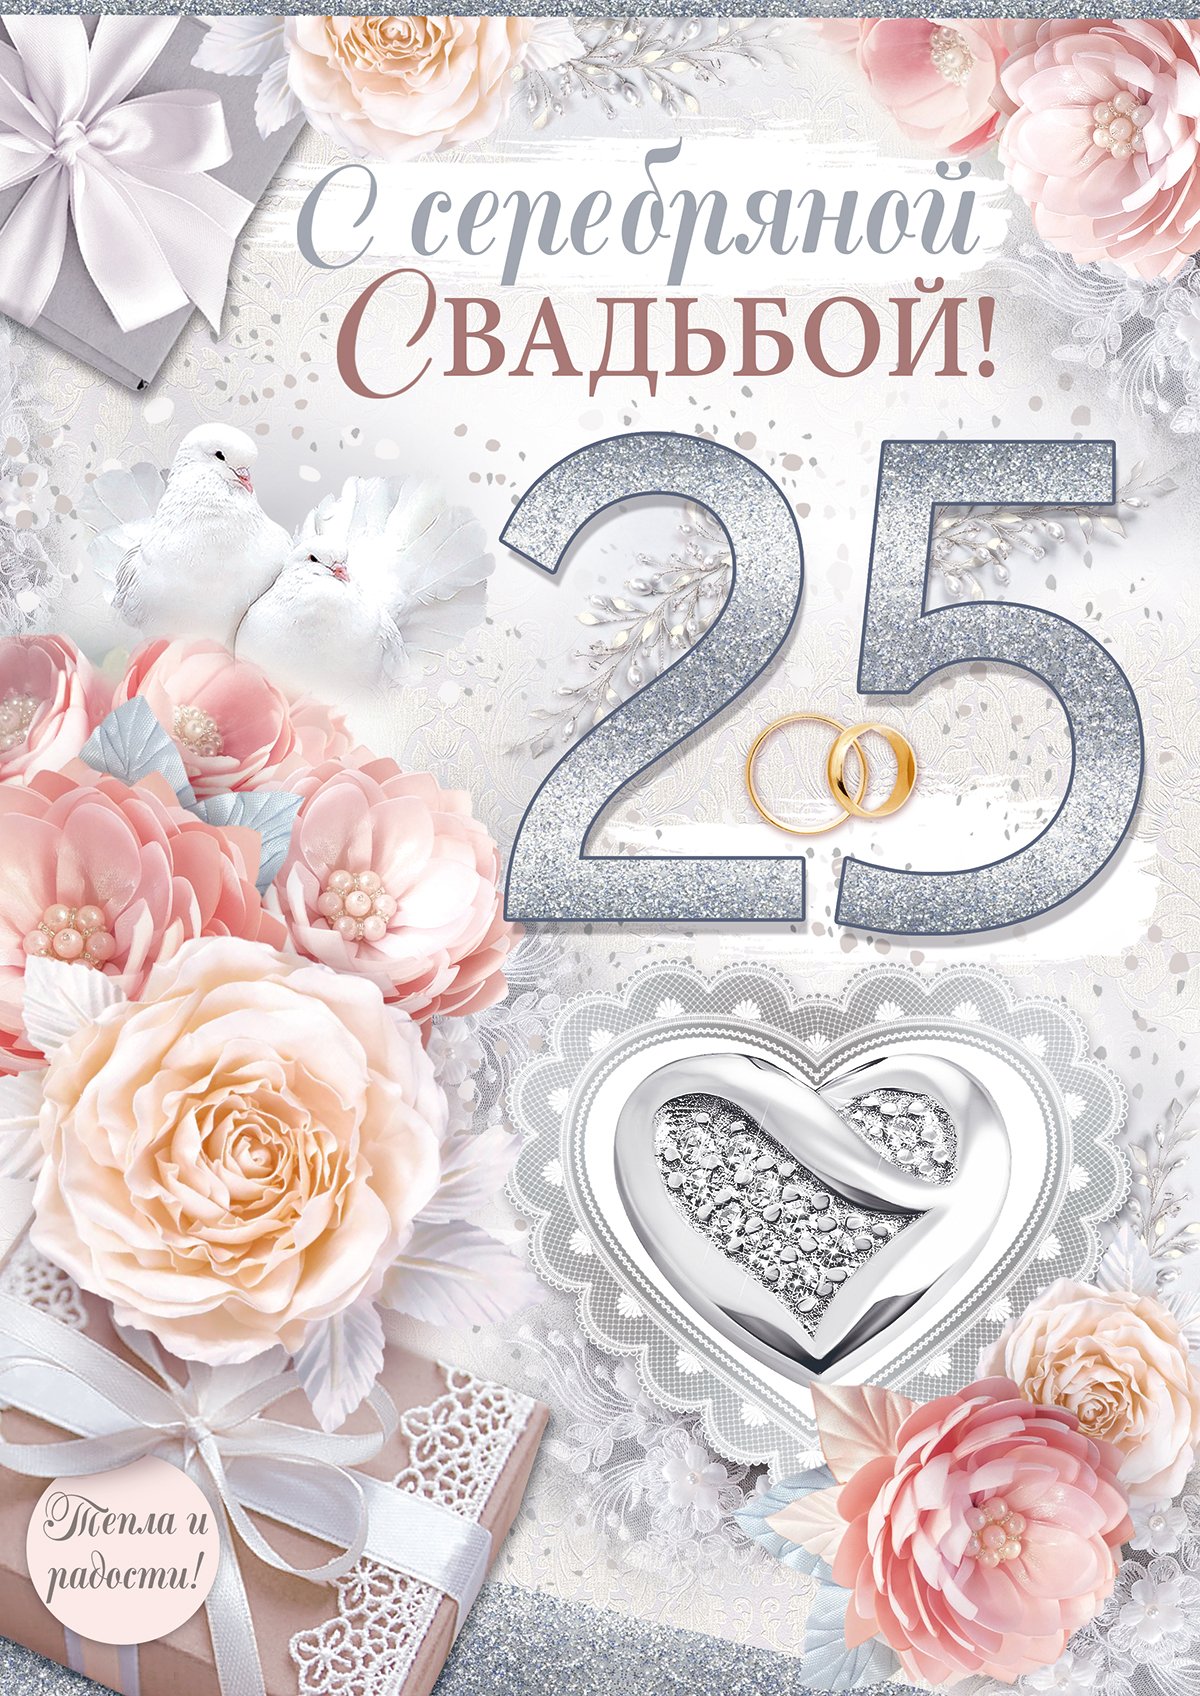 Поздравления родителям на 25 лет свадьбы своими словами - rov-hyundai.ru